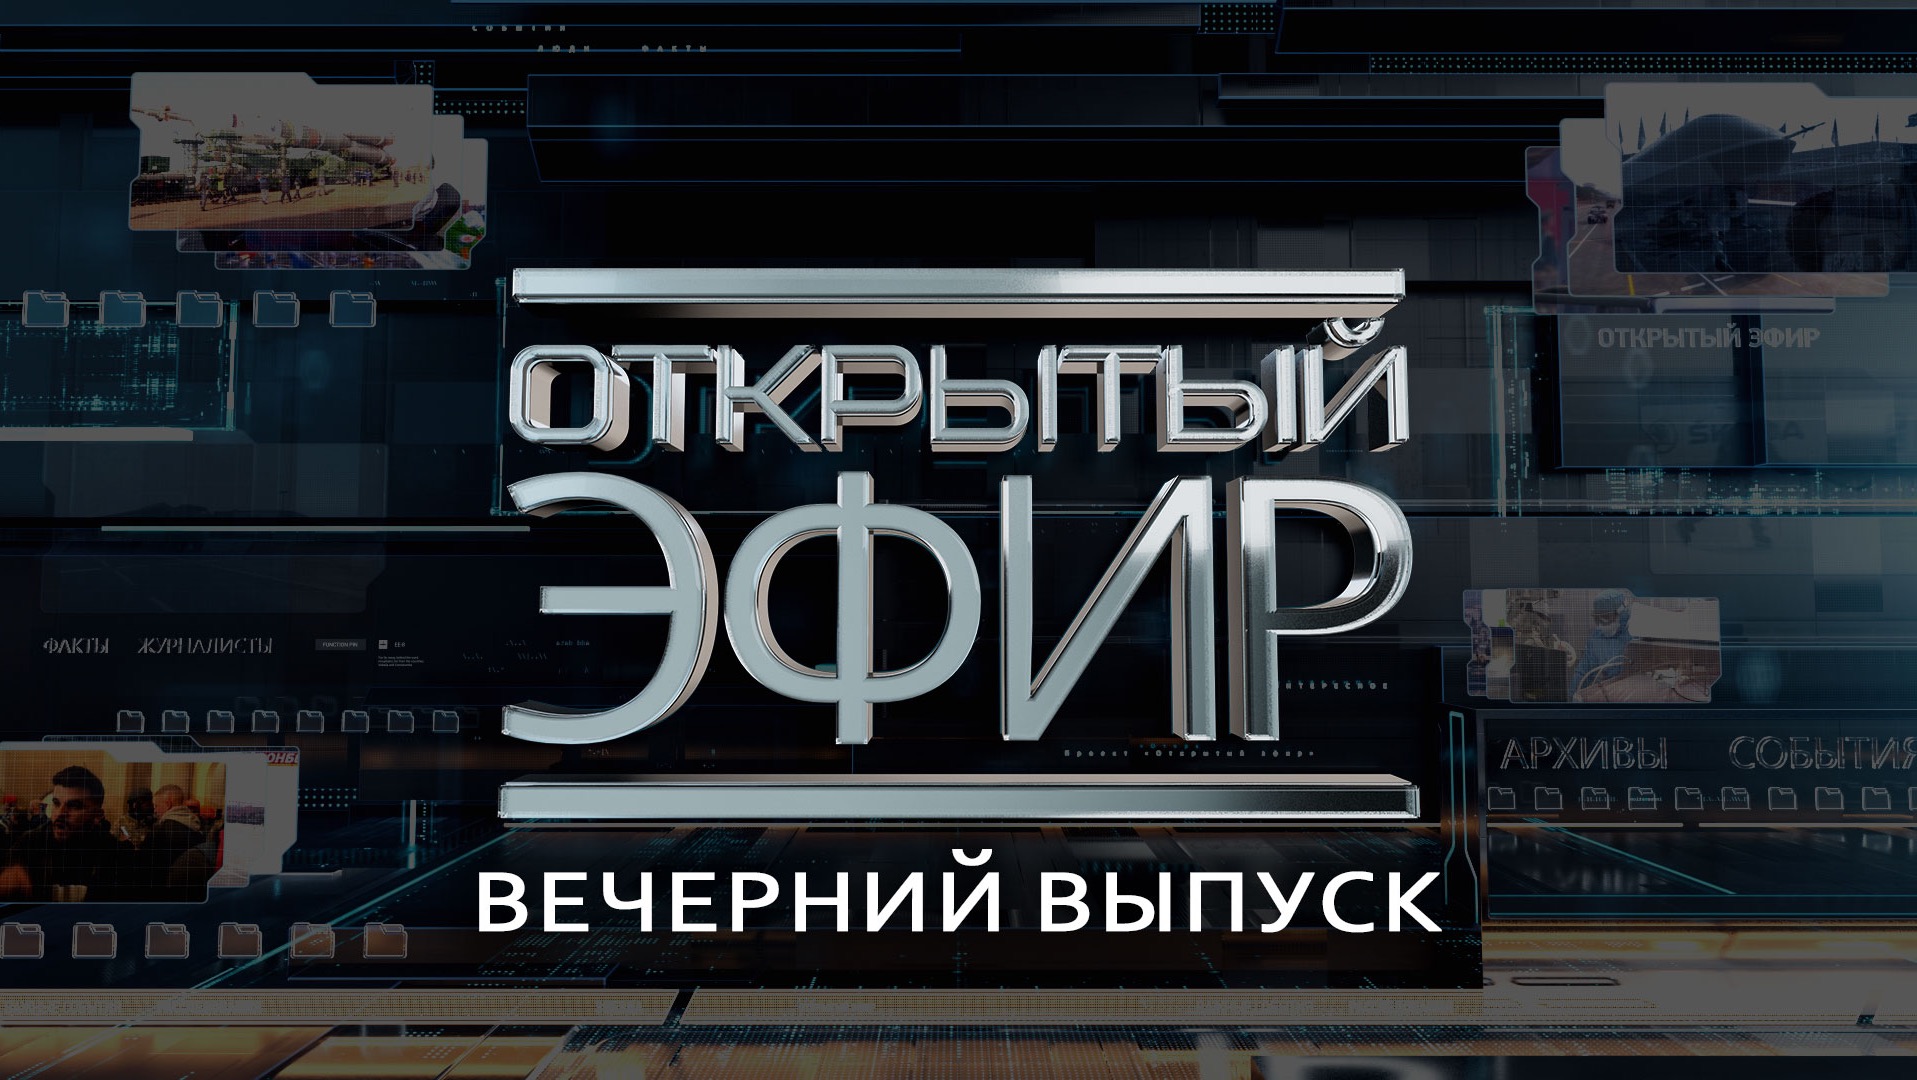 "Открытый эфир" о специальной военной операции в Донбассе. День 500